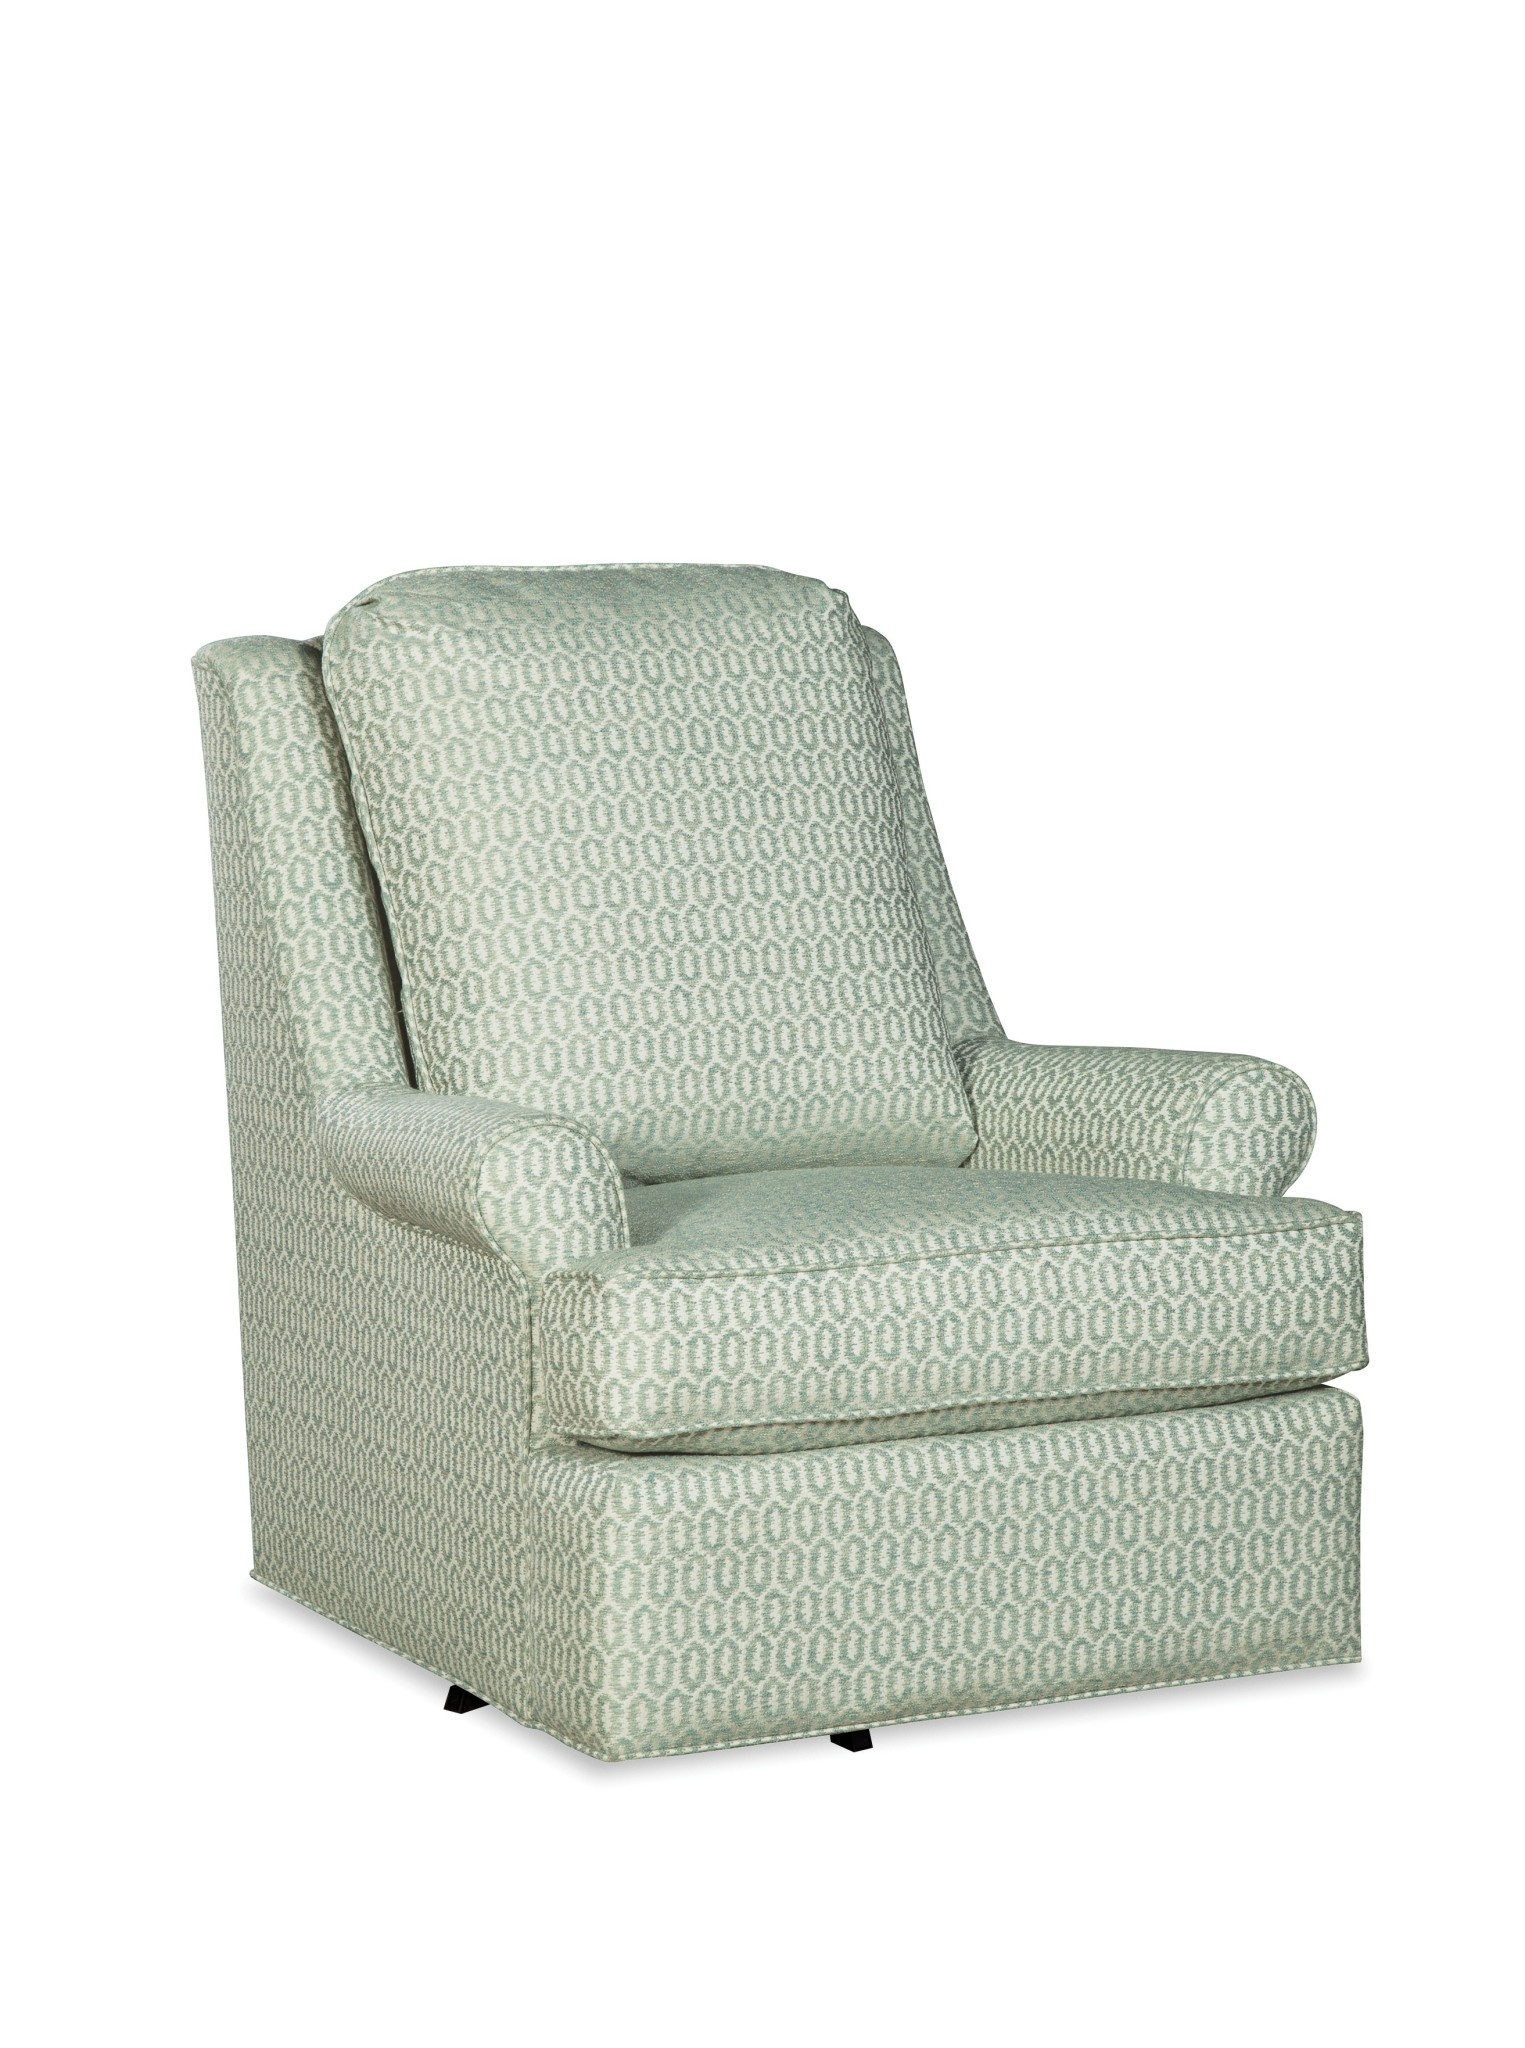 Craftmaster Furniture P004310BDSC Paula Deen Swivel Chair